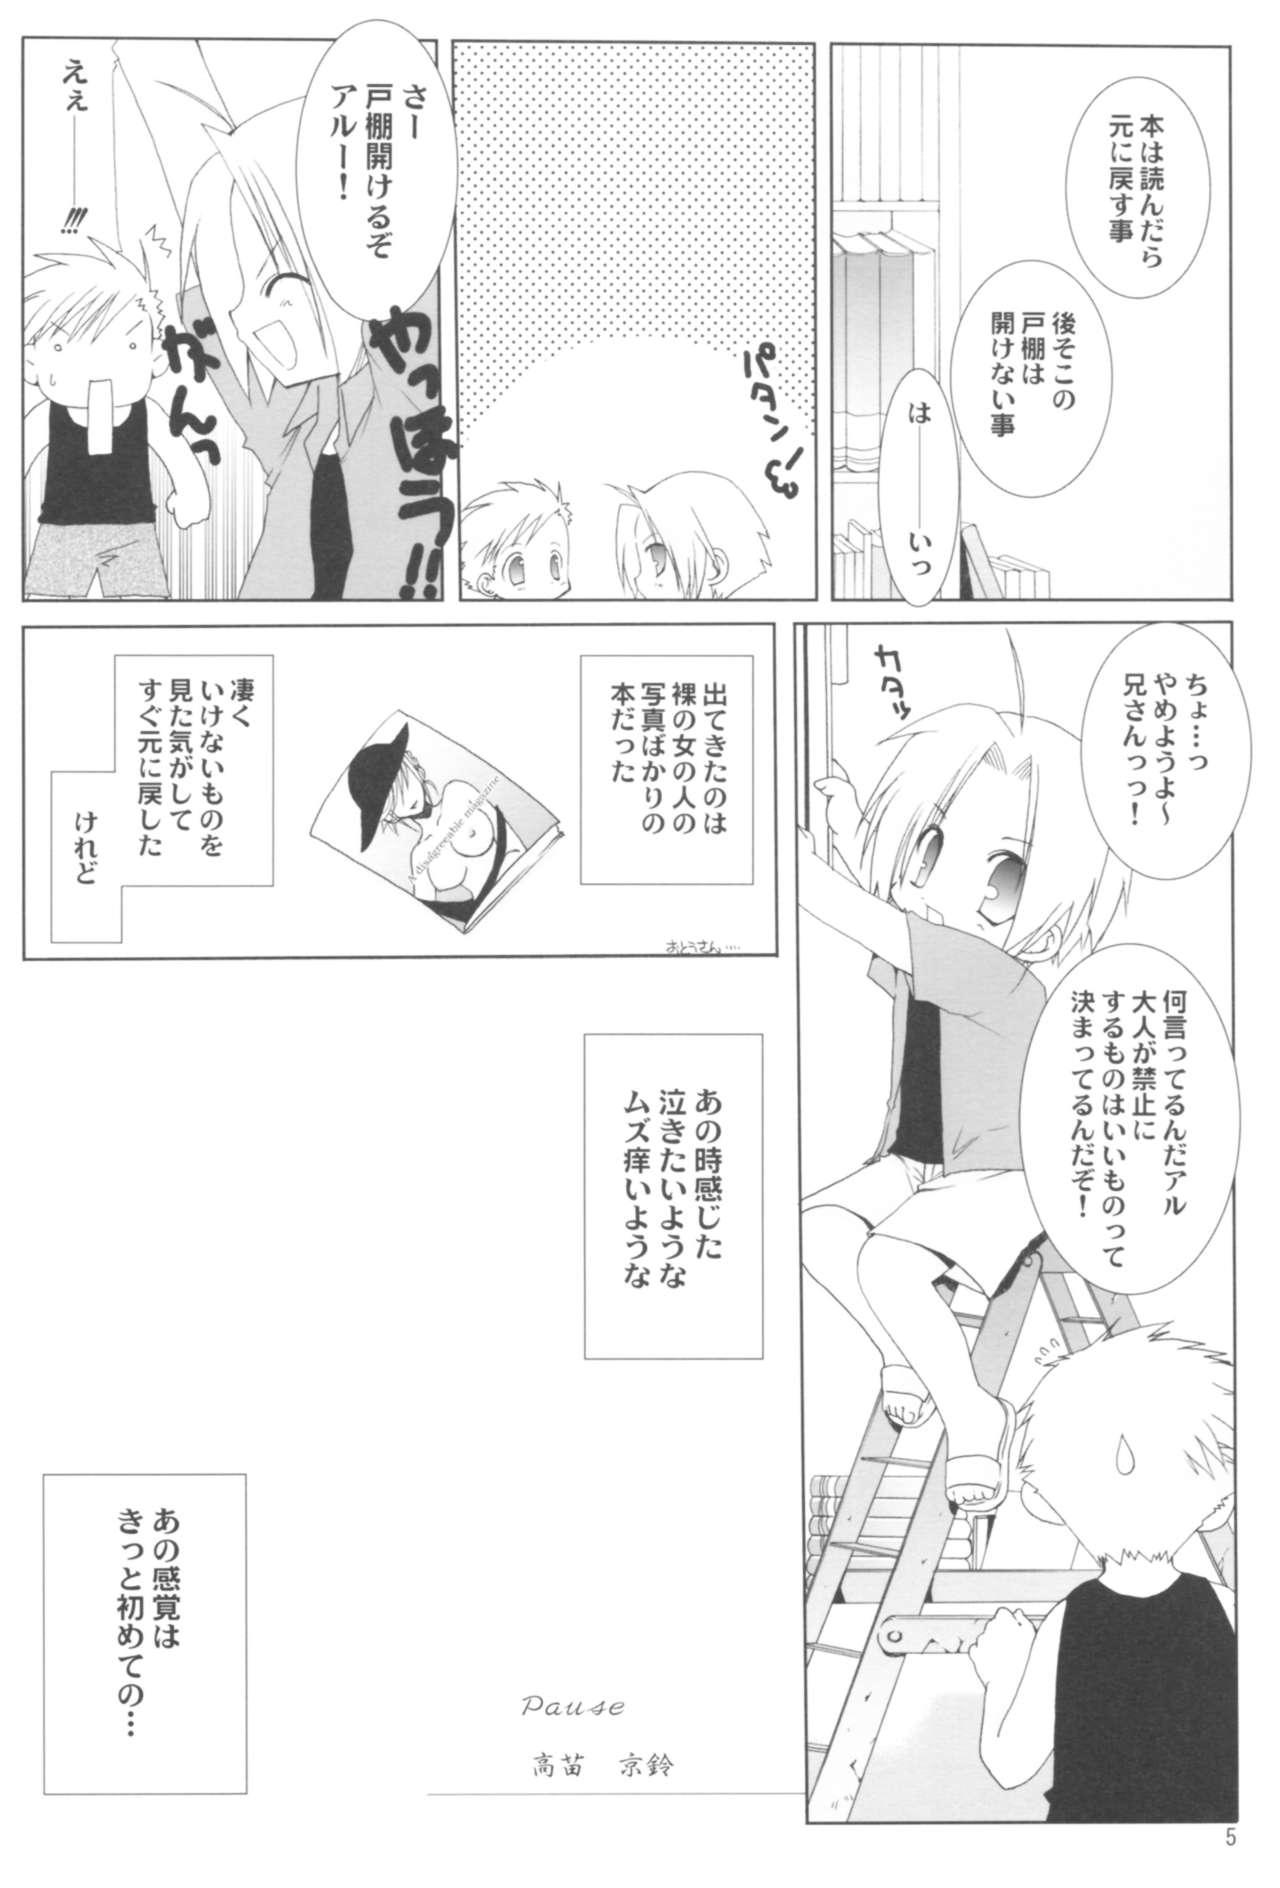 Toy Naedoko Ikusei Kansatsu Kiroku - Bleach Fullmetal alchemist Higurashi no naku koro ni Family Roleplay - Page 5